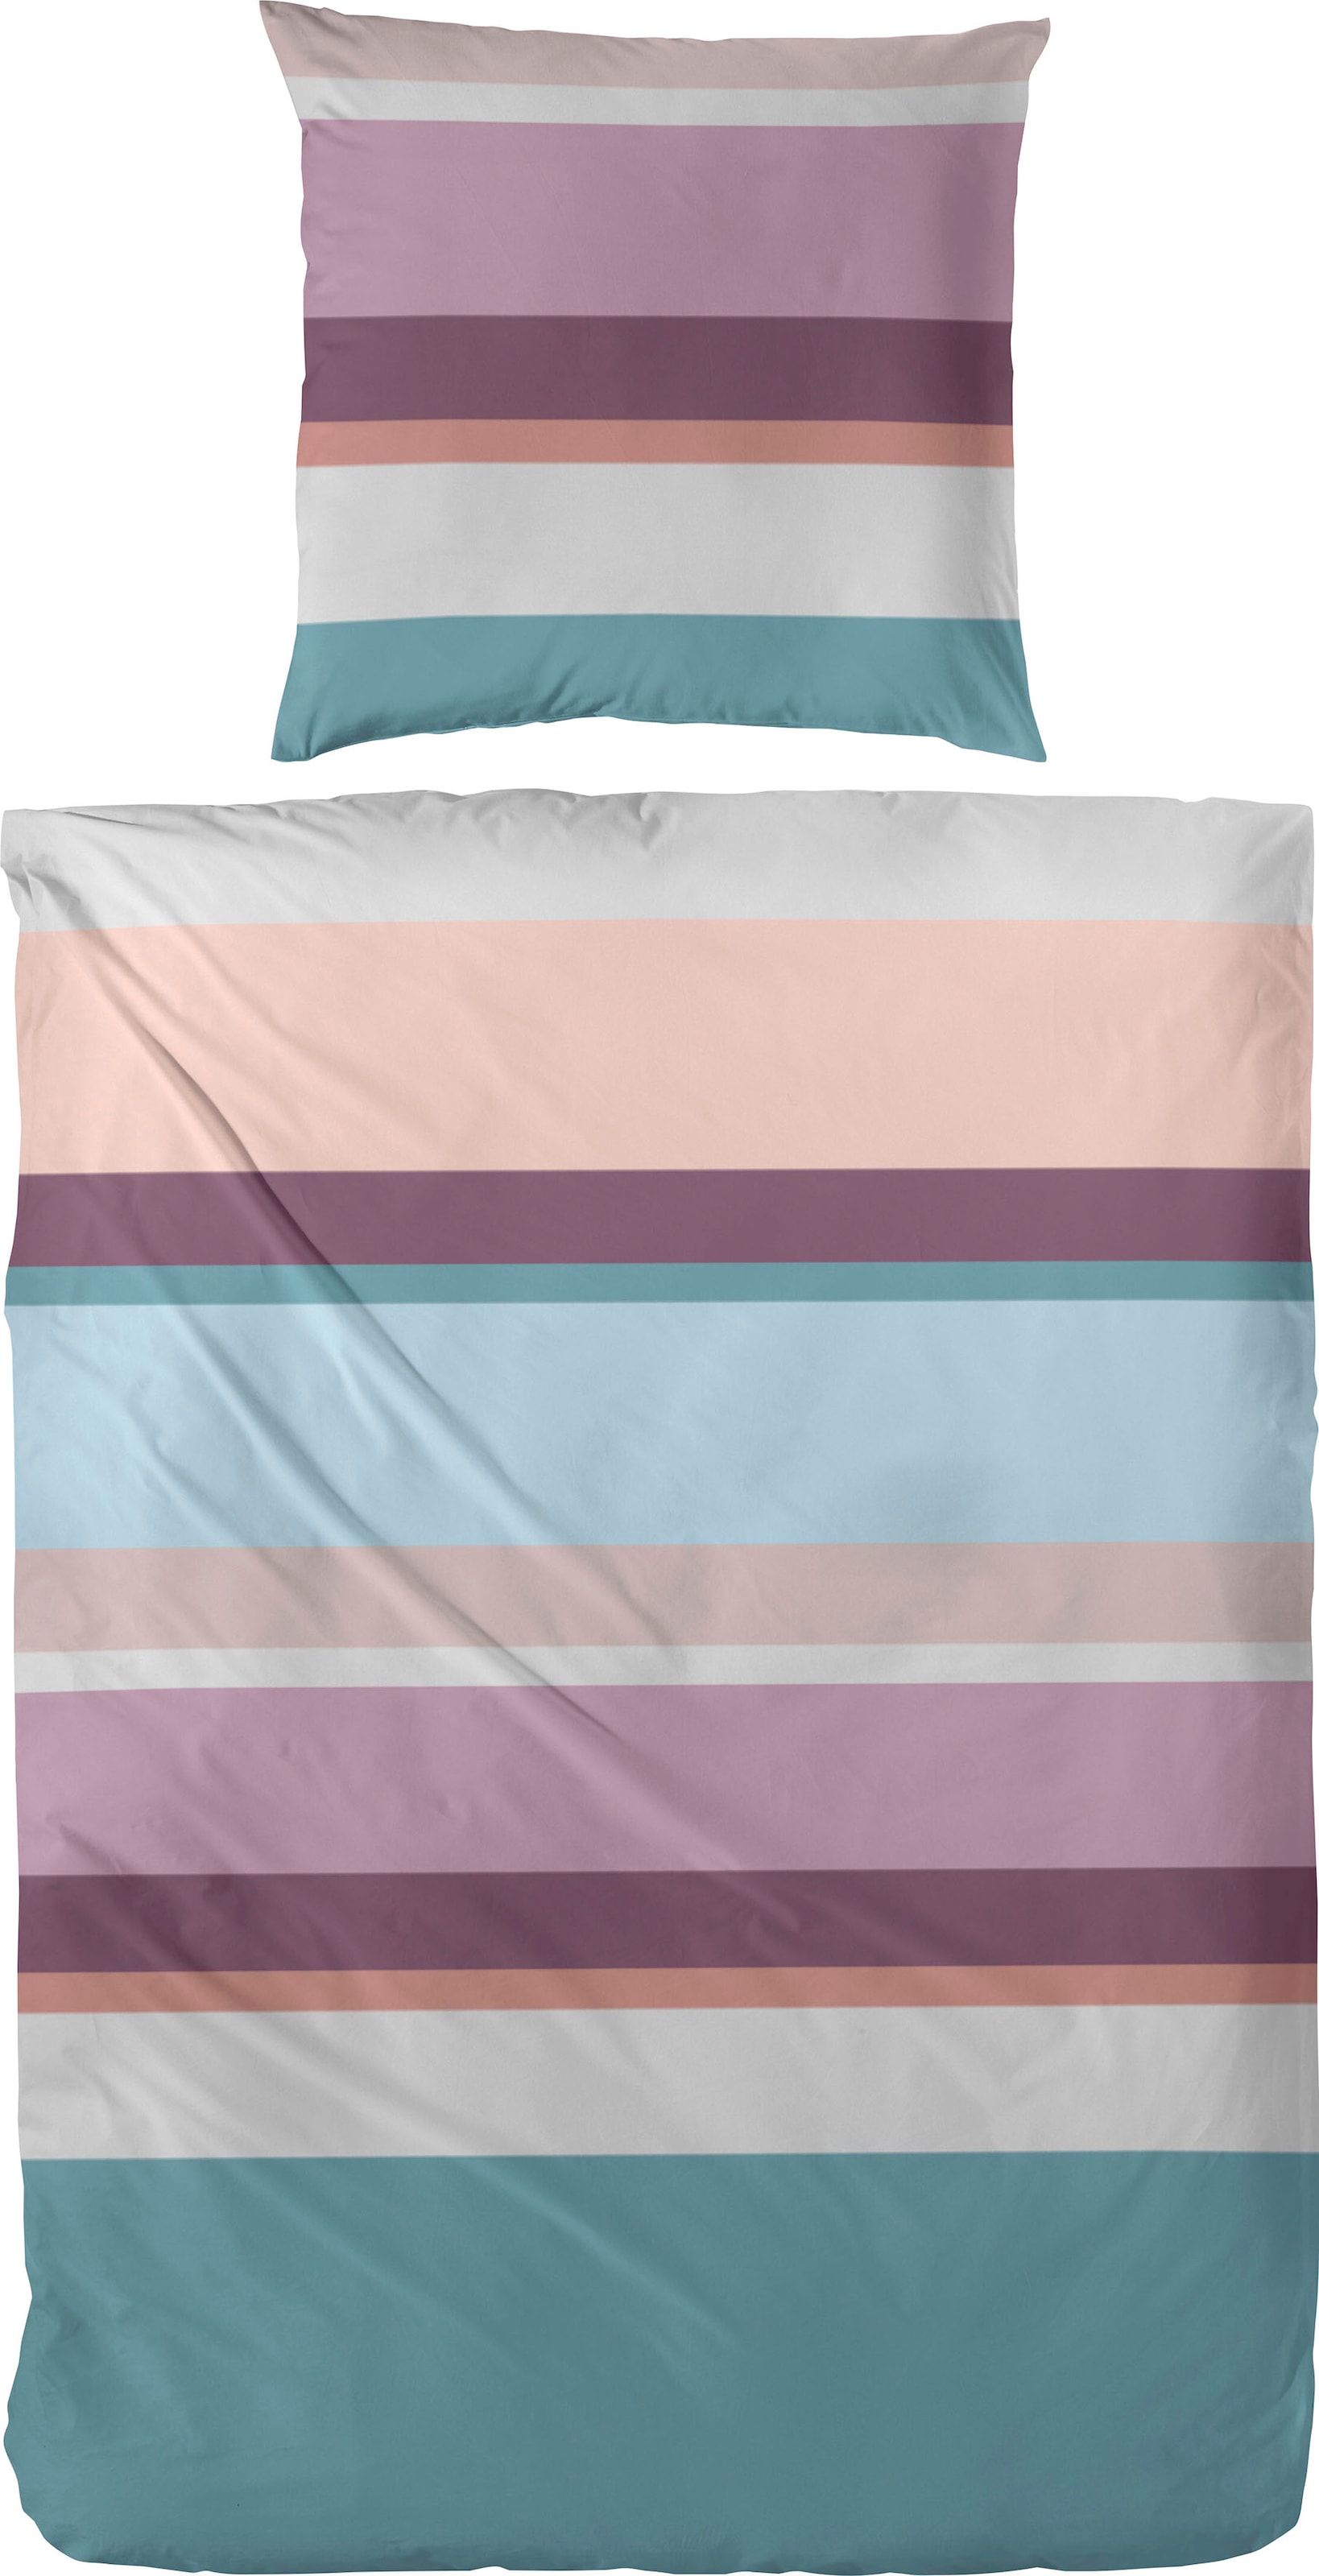 Bettwäsche »Heavy Stripe«, (2 tlg.), mit modernen Streifen in frischen Farben